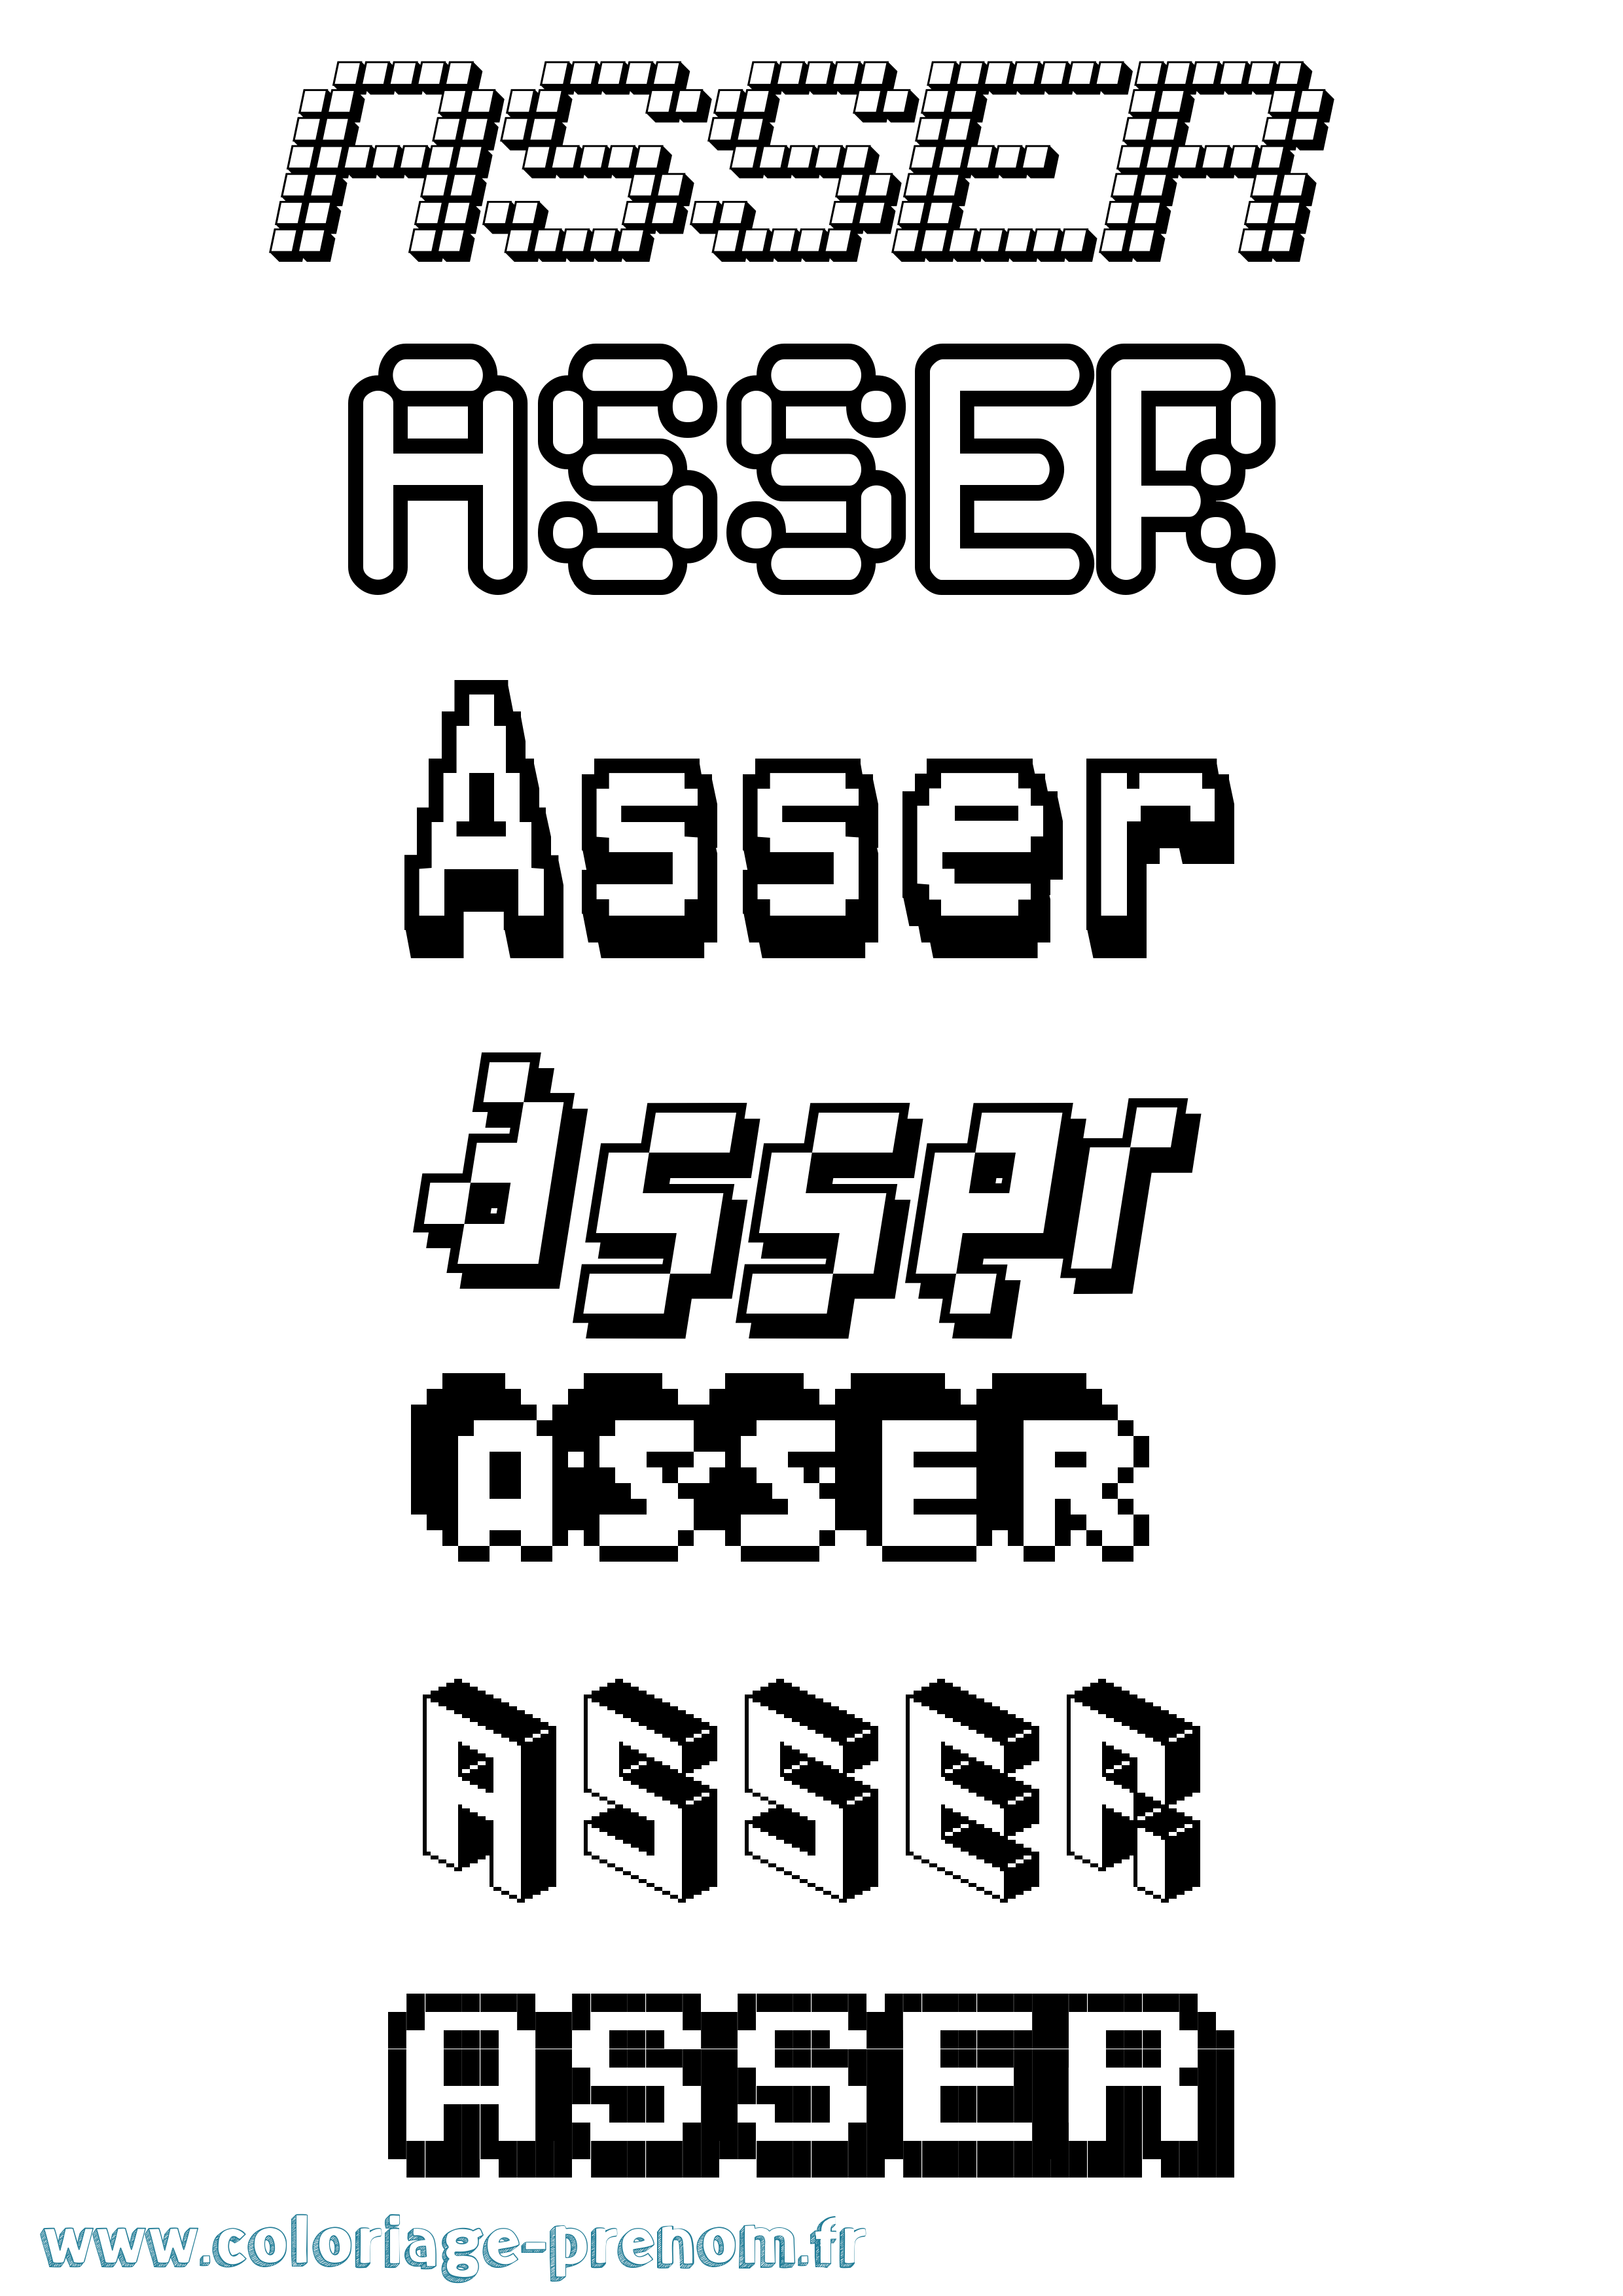 Coloriage prénom Asser Pixel